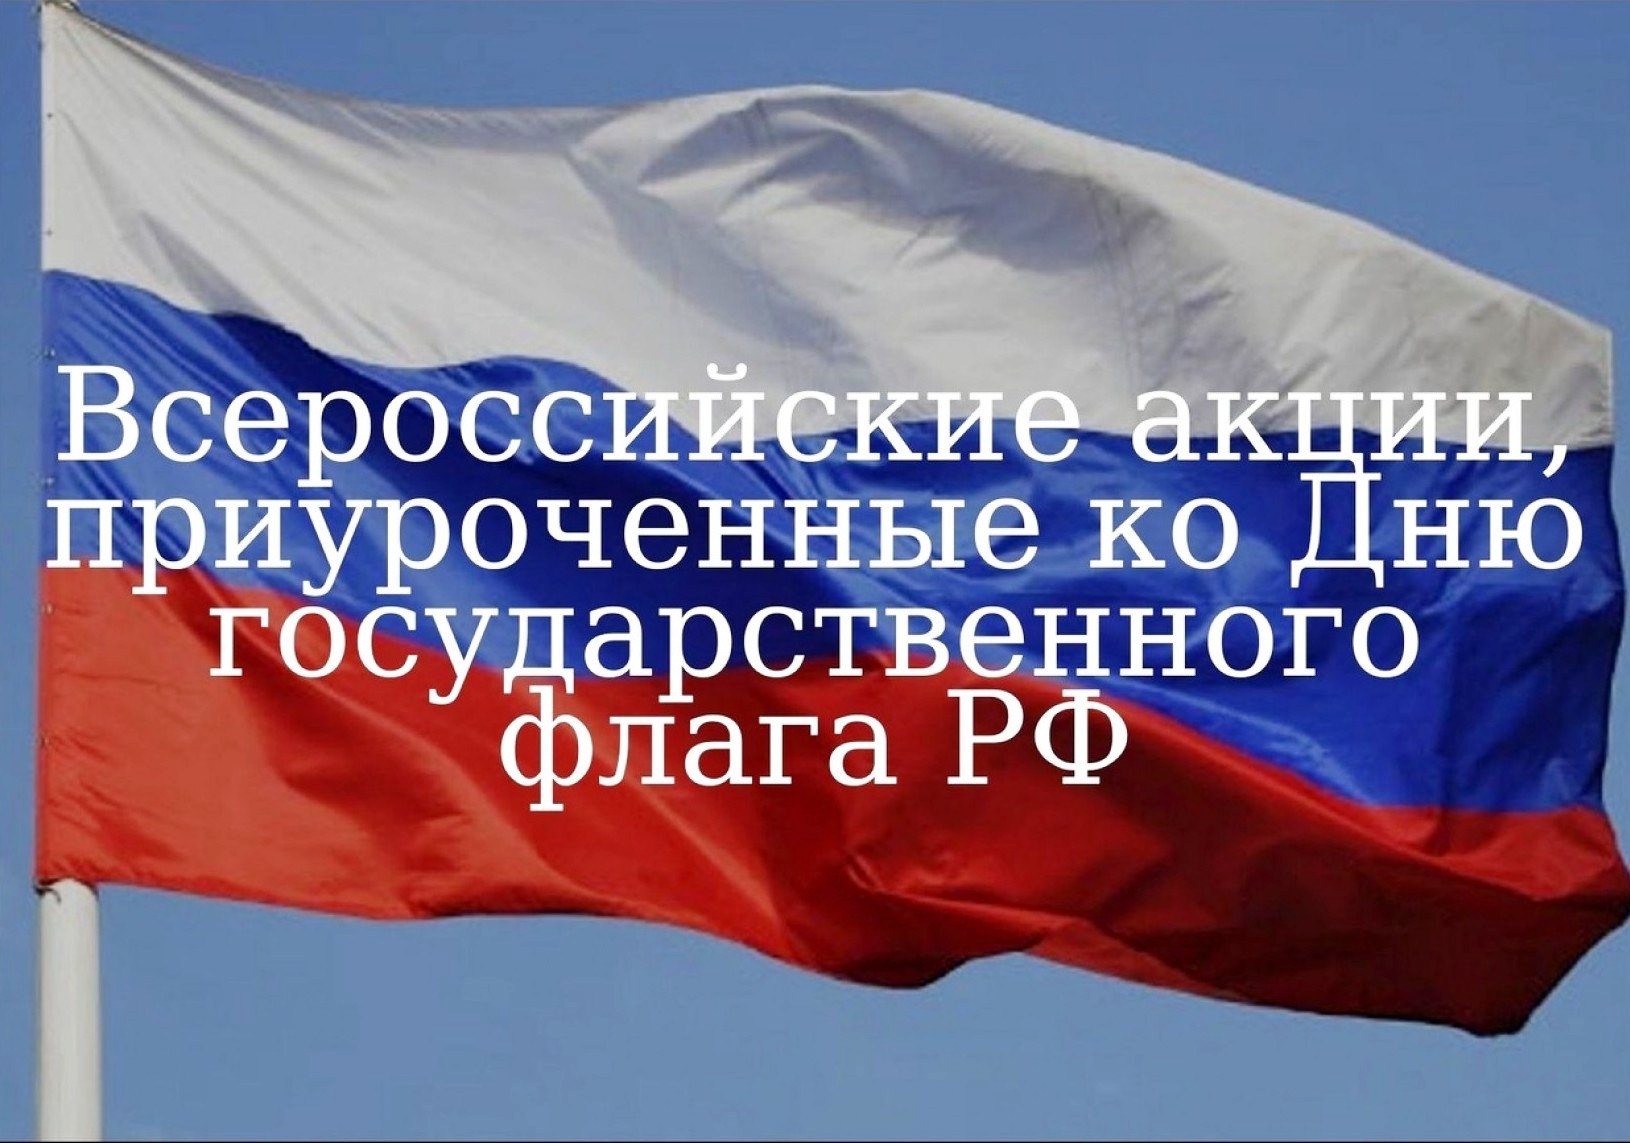 Всероссийская акция день государственного флага